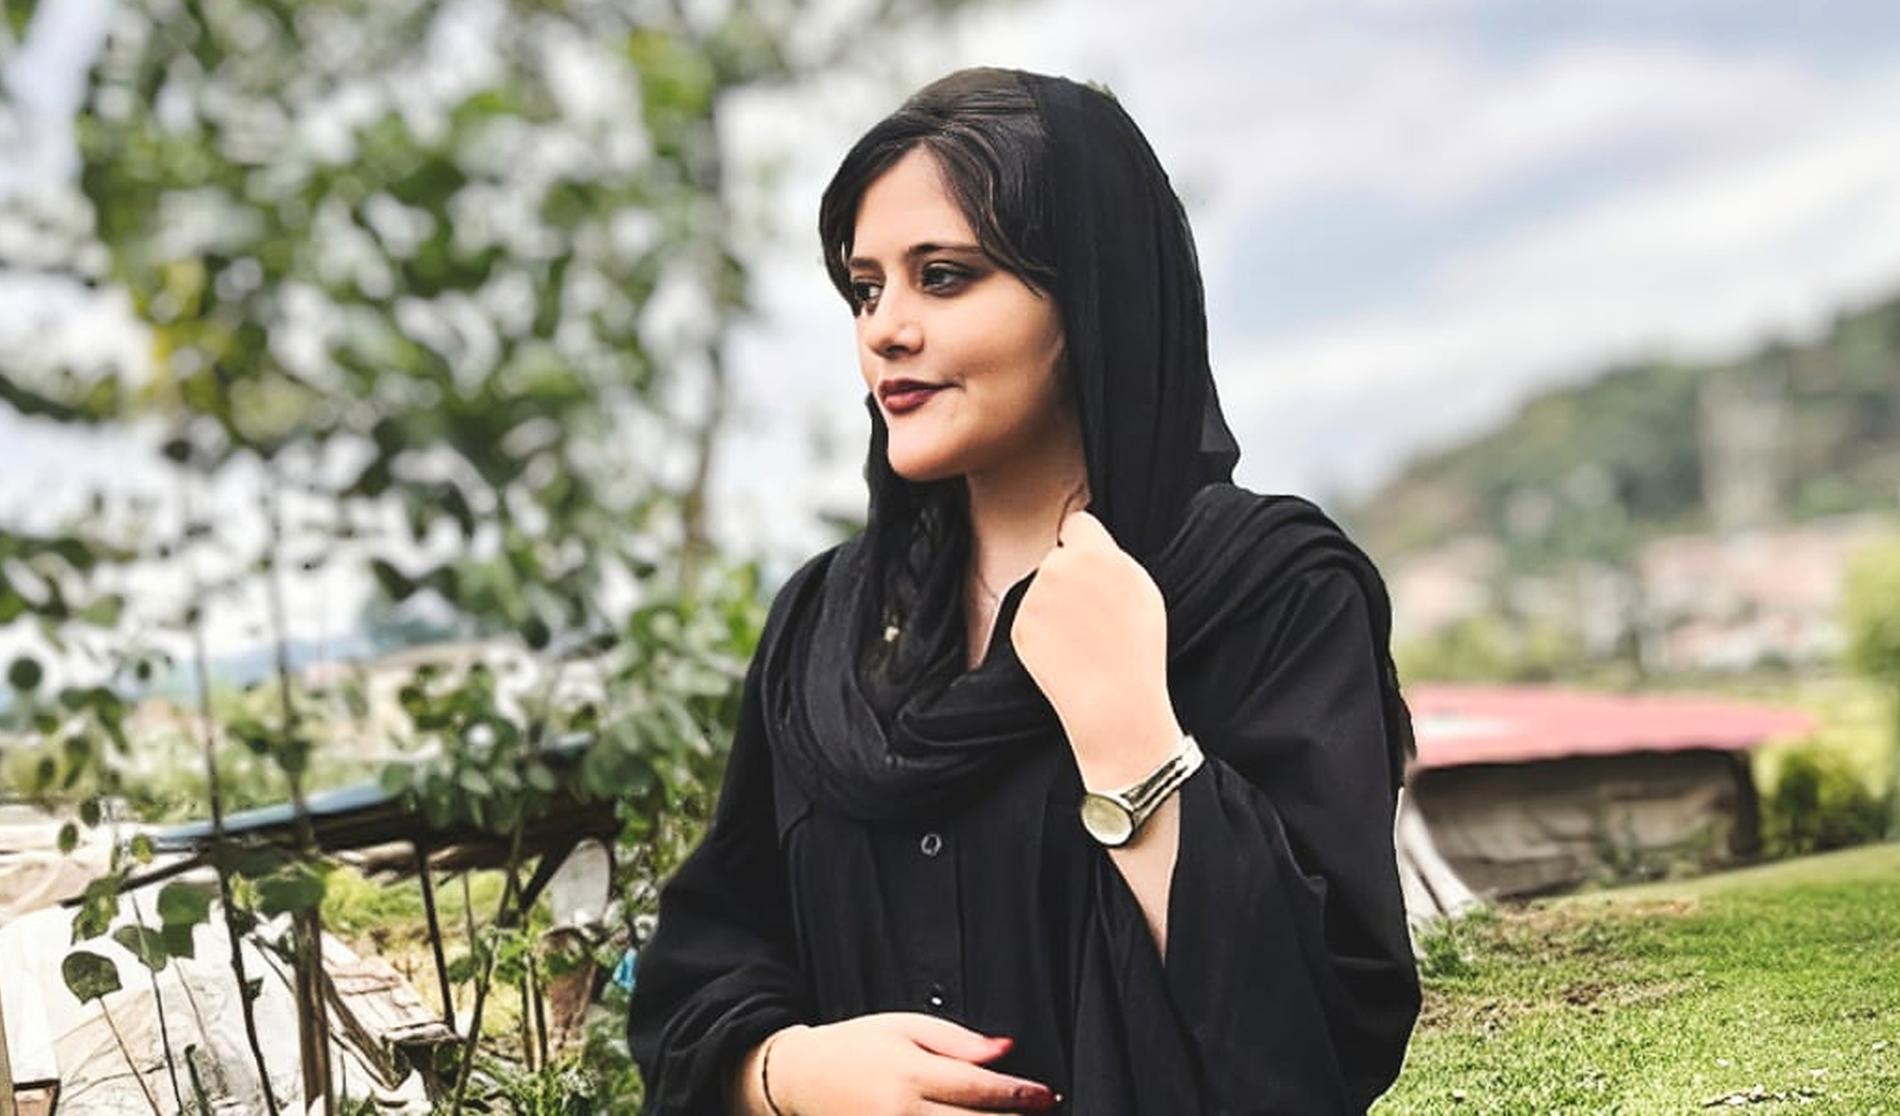 Mahsa Amini, 22, arresterades av den iranska ”sedlighetpolisen” i Teheran  den 16 september. Brottet hon anklagades för var att bära sin hijab (slöja) på fel sätt. Sedlighetspolisen är en speciell polisenhet som ser till att kvinnor följer den iranska prästdiktaturens strikta klädregler. Mahsa Amini fördes först till till Vozaras interneringscenter. Hon dog senare på sjukhus. Amini kom från Sanandaj i västra Iran, hon var på besök i Teheran med sin familj när hon greps.